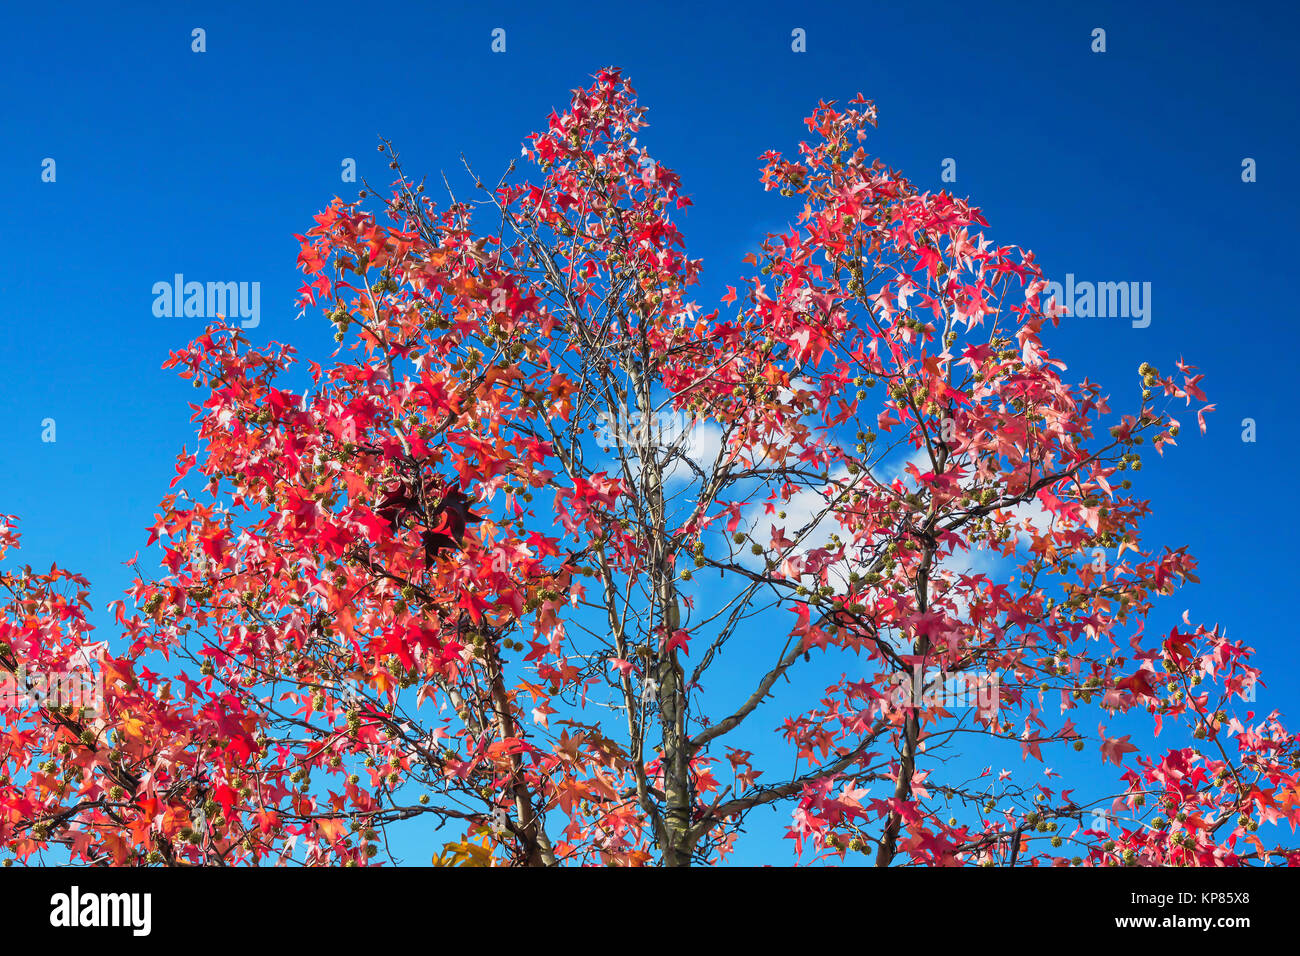 Herbstbaum im November bei sonnigen Wetter vor blauen Himmel. Stock Photo